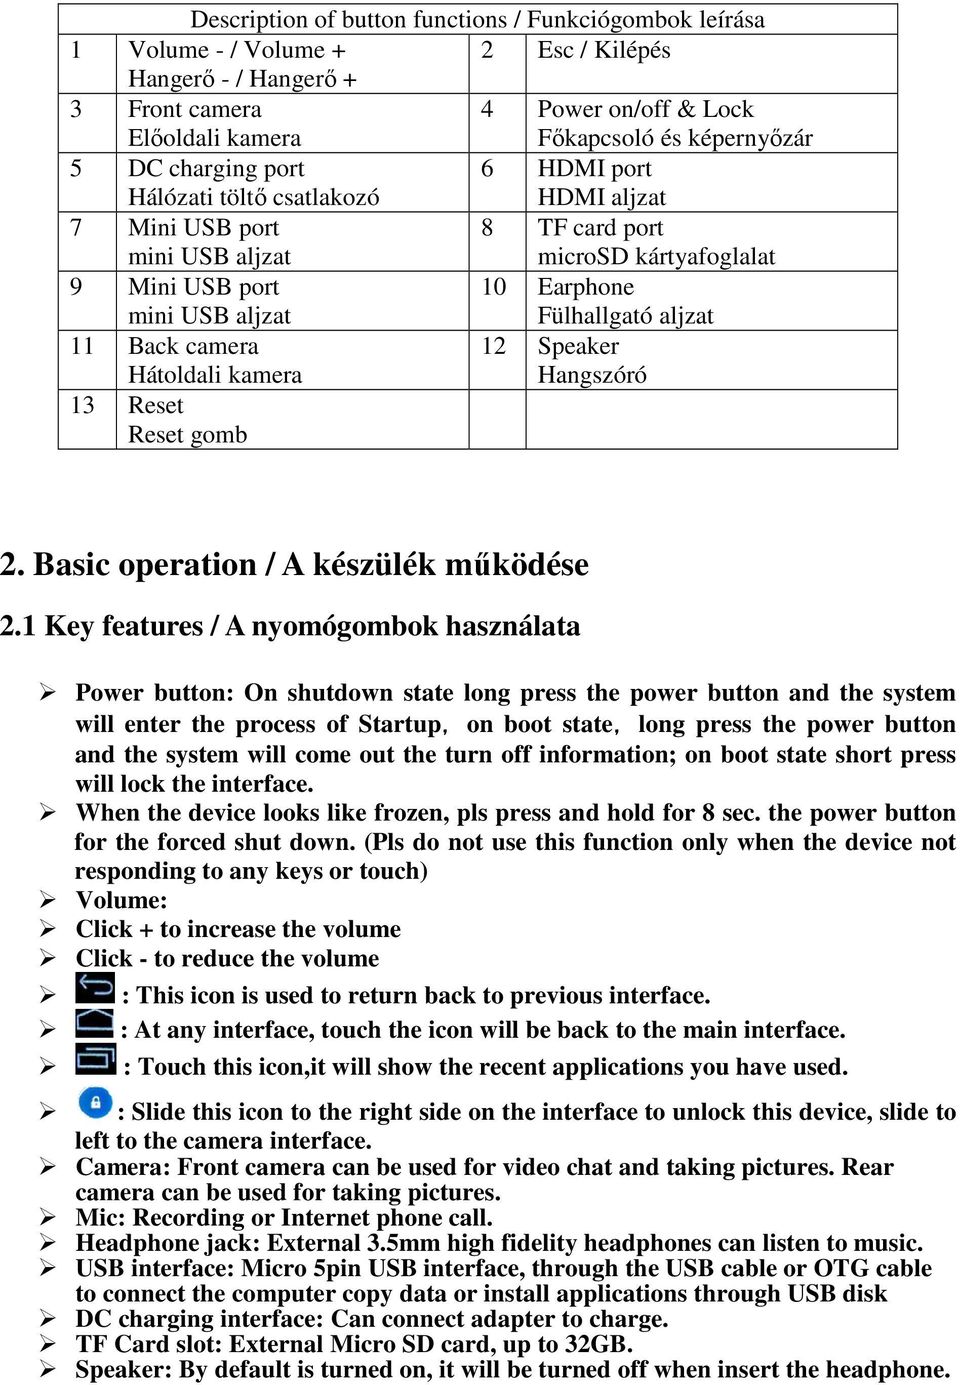 Használati útmutató User manual - PDF Ingyenes letöltés